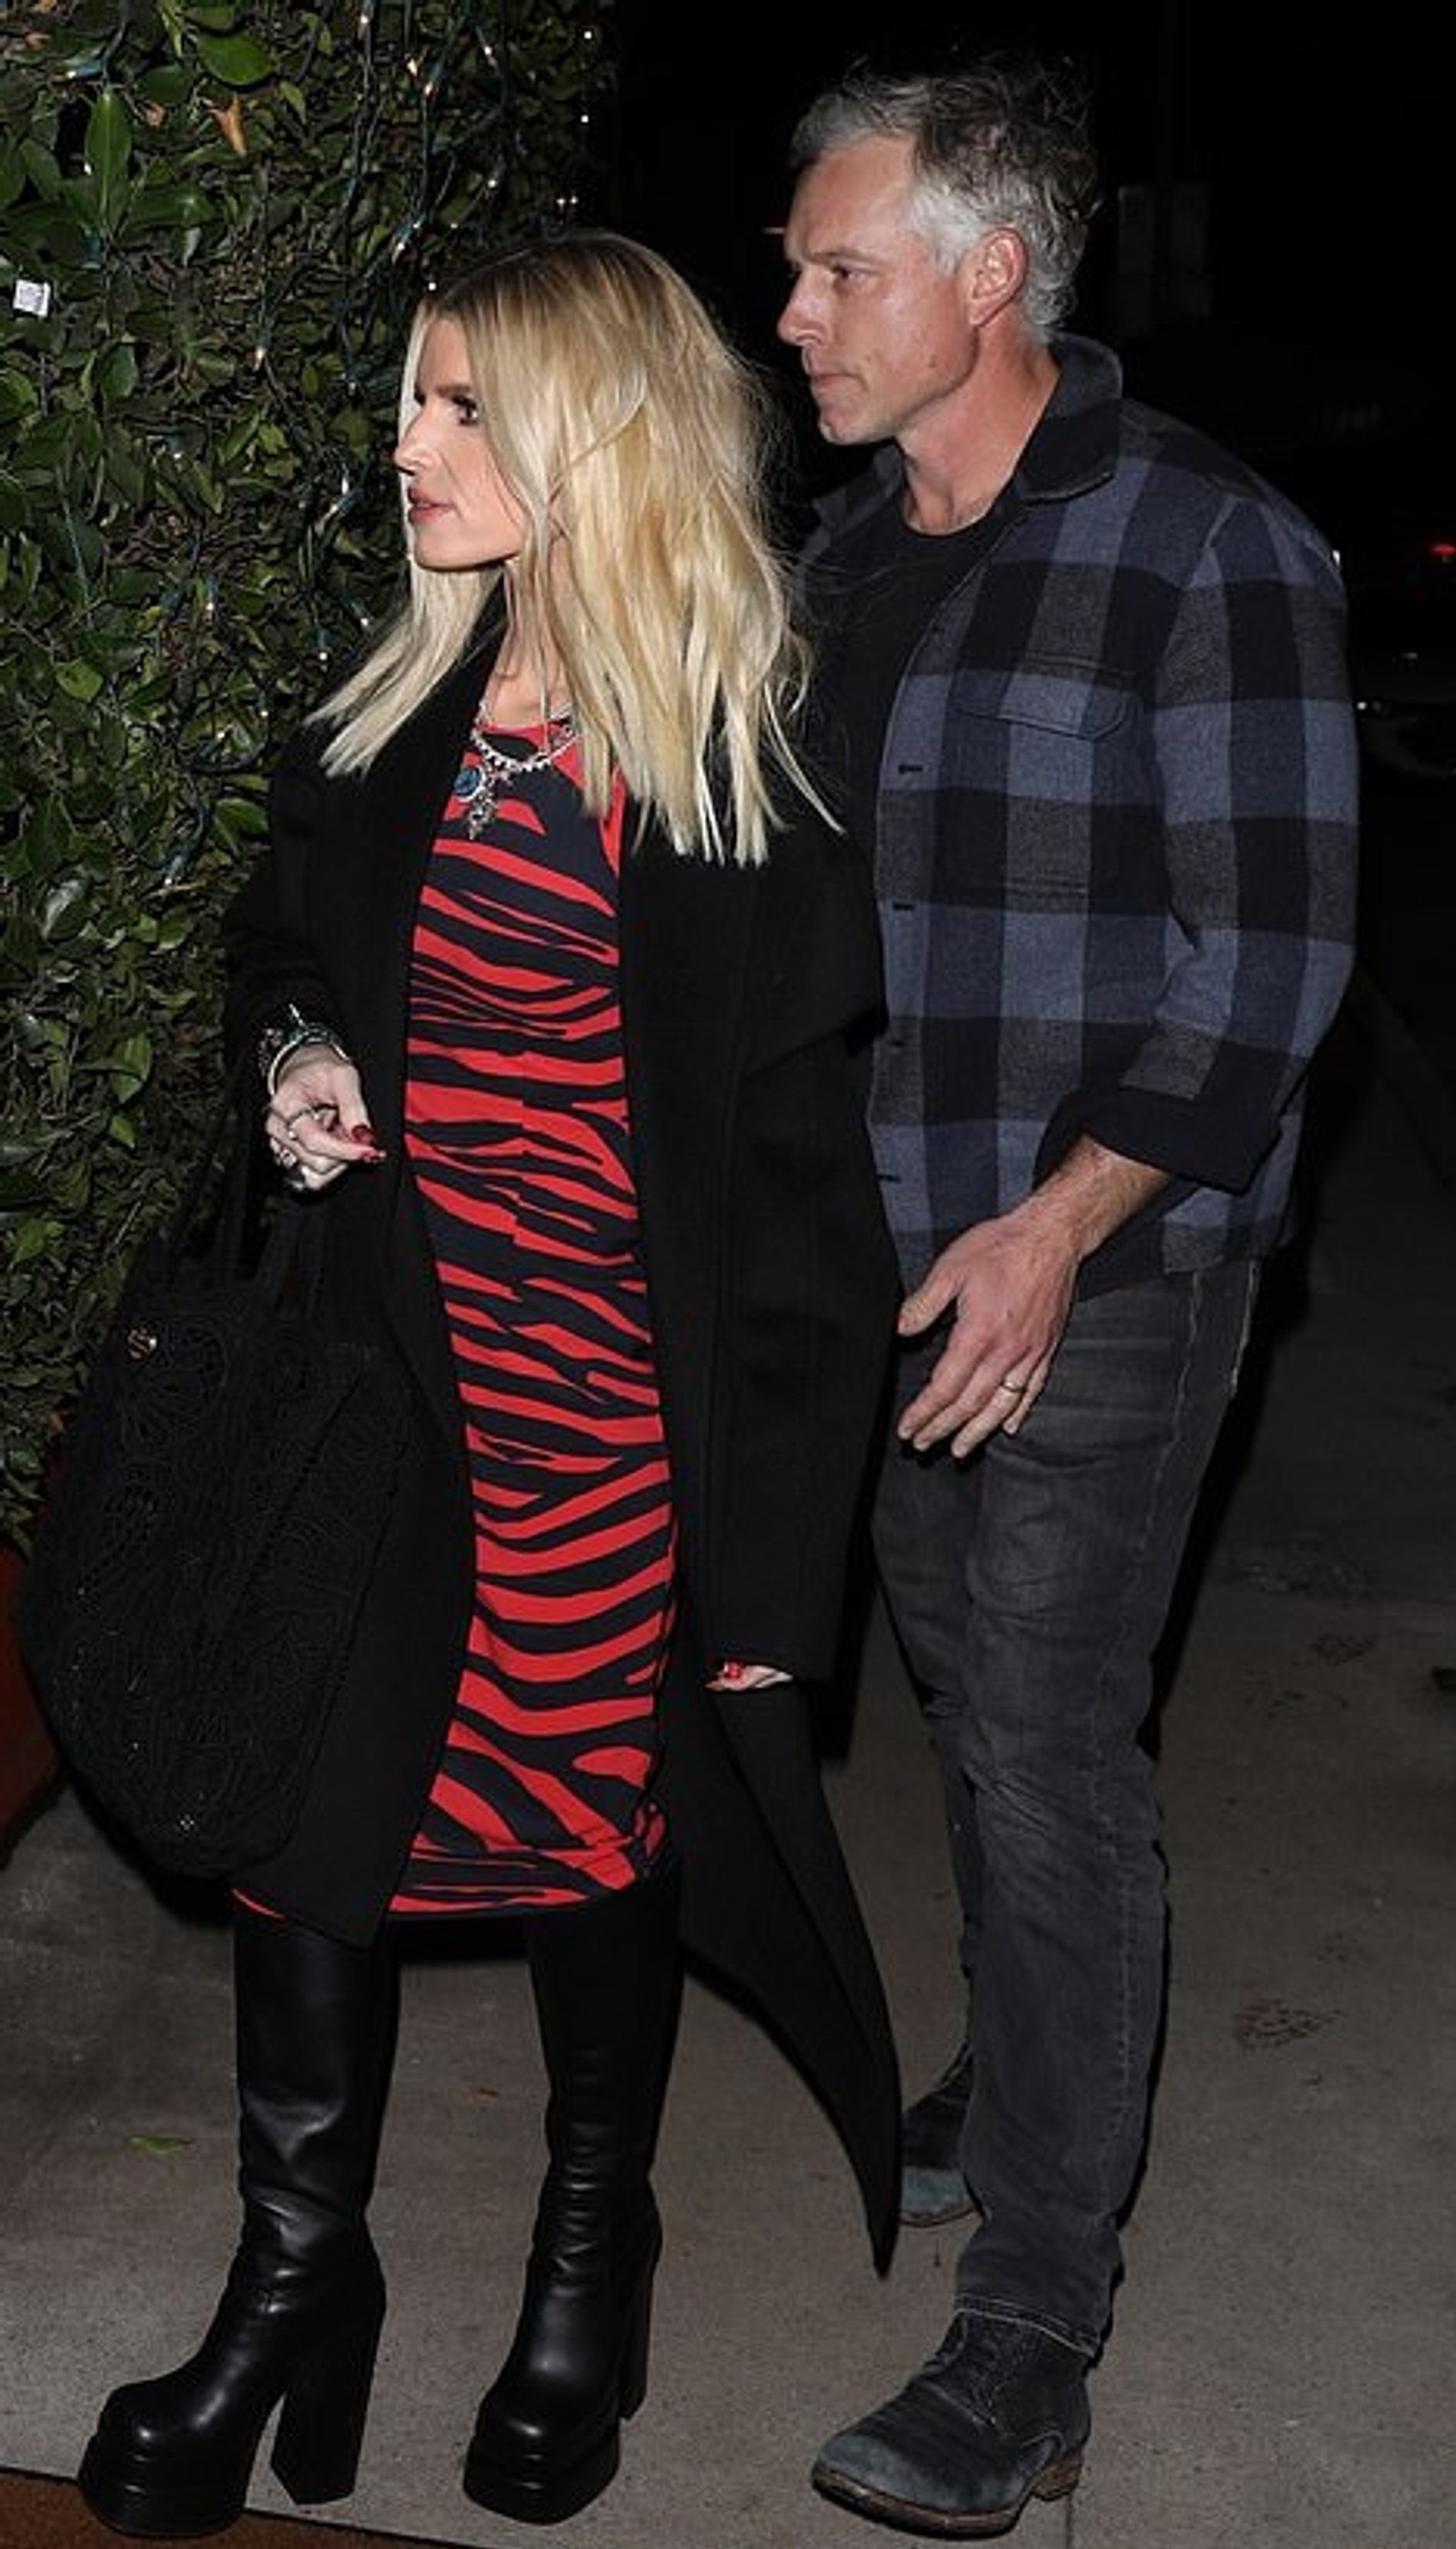 Джессика Симпсон на свидании с мужем
Фото: Daily Mail